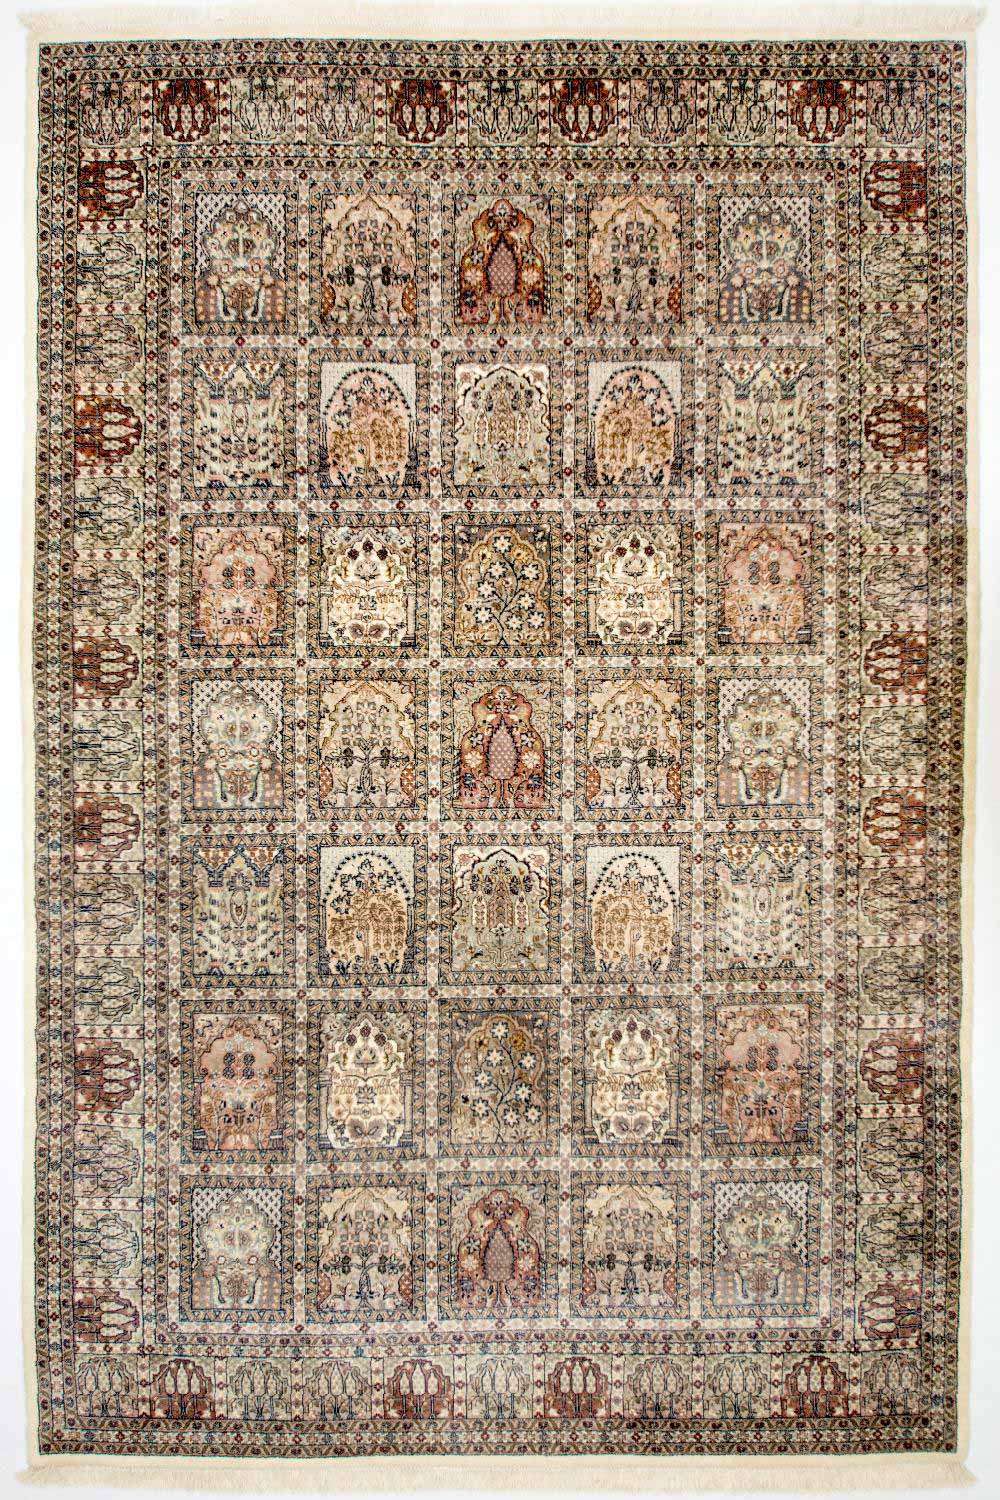 Tapete Persa - Nomadic - 304 x 209 cm - multicolorido